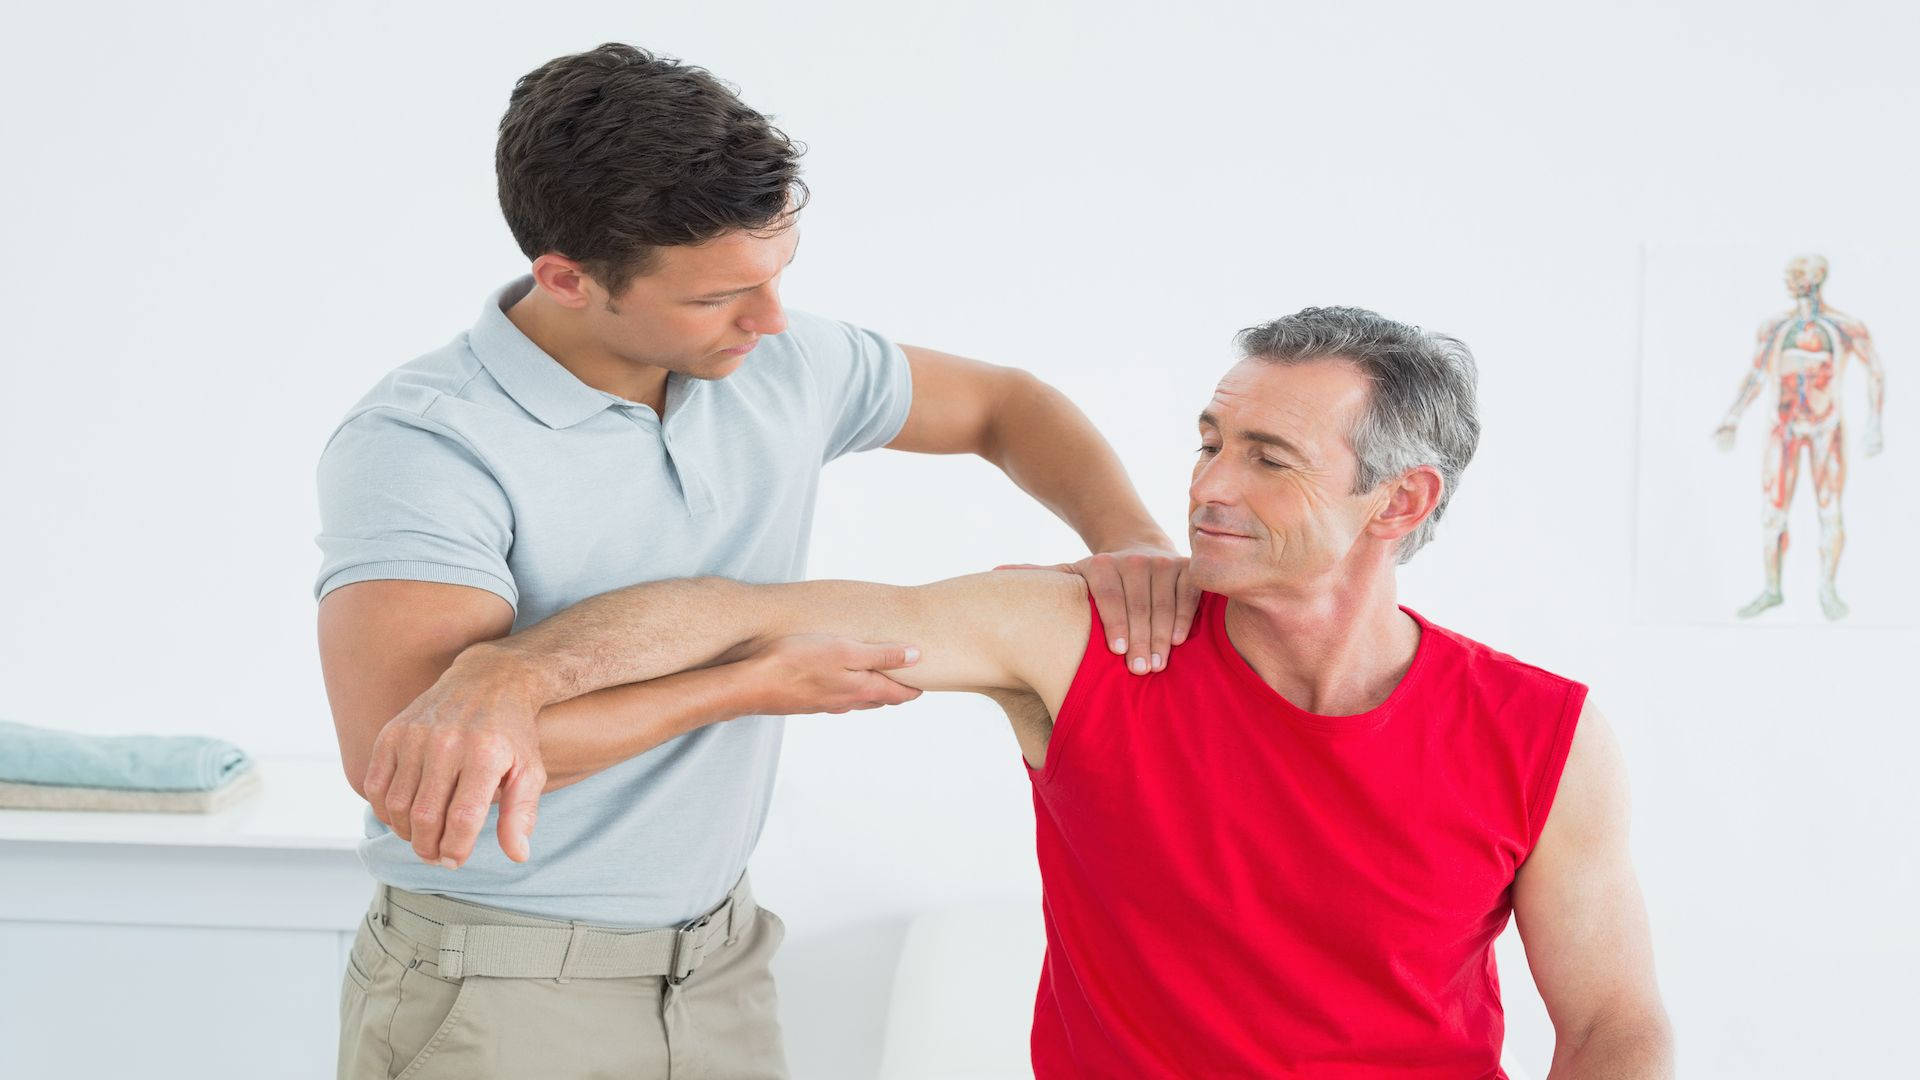 Mand giver massagebehandling til patient Wallpaper